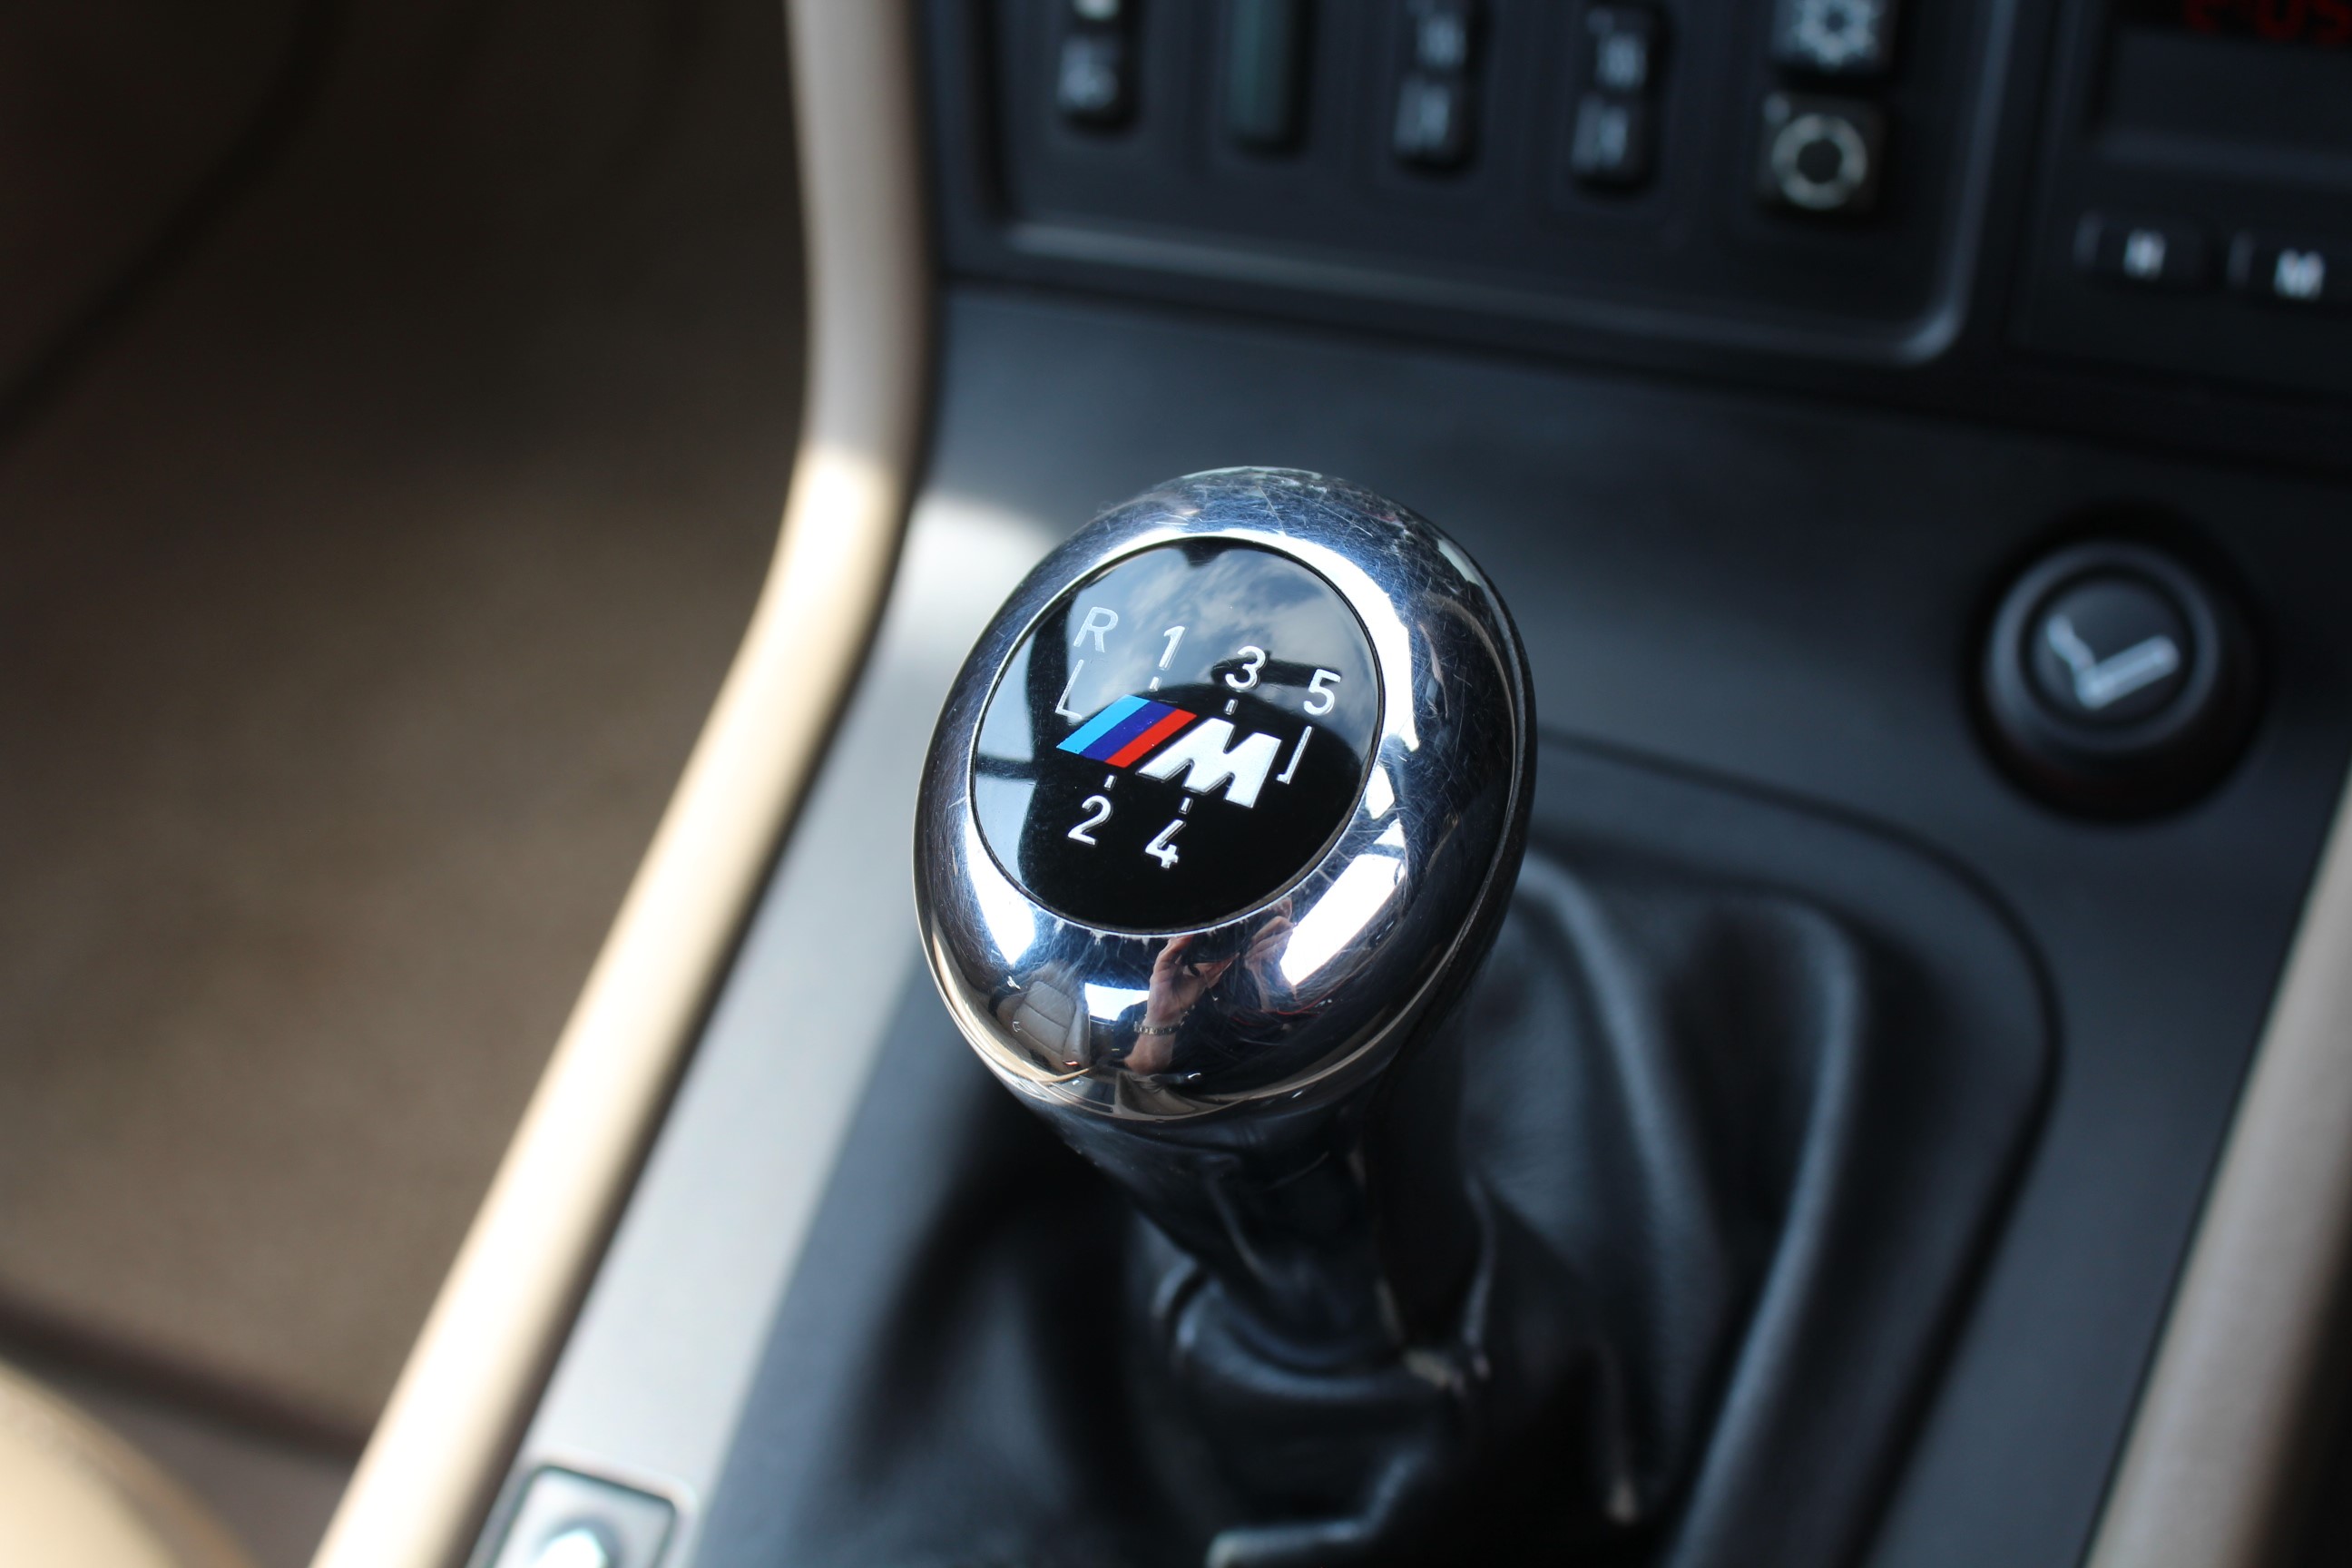 BMW Z3 2.8 Roadster